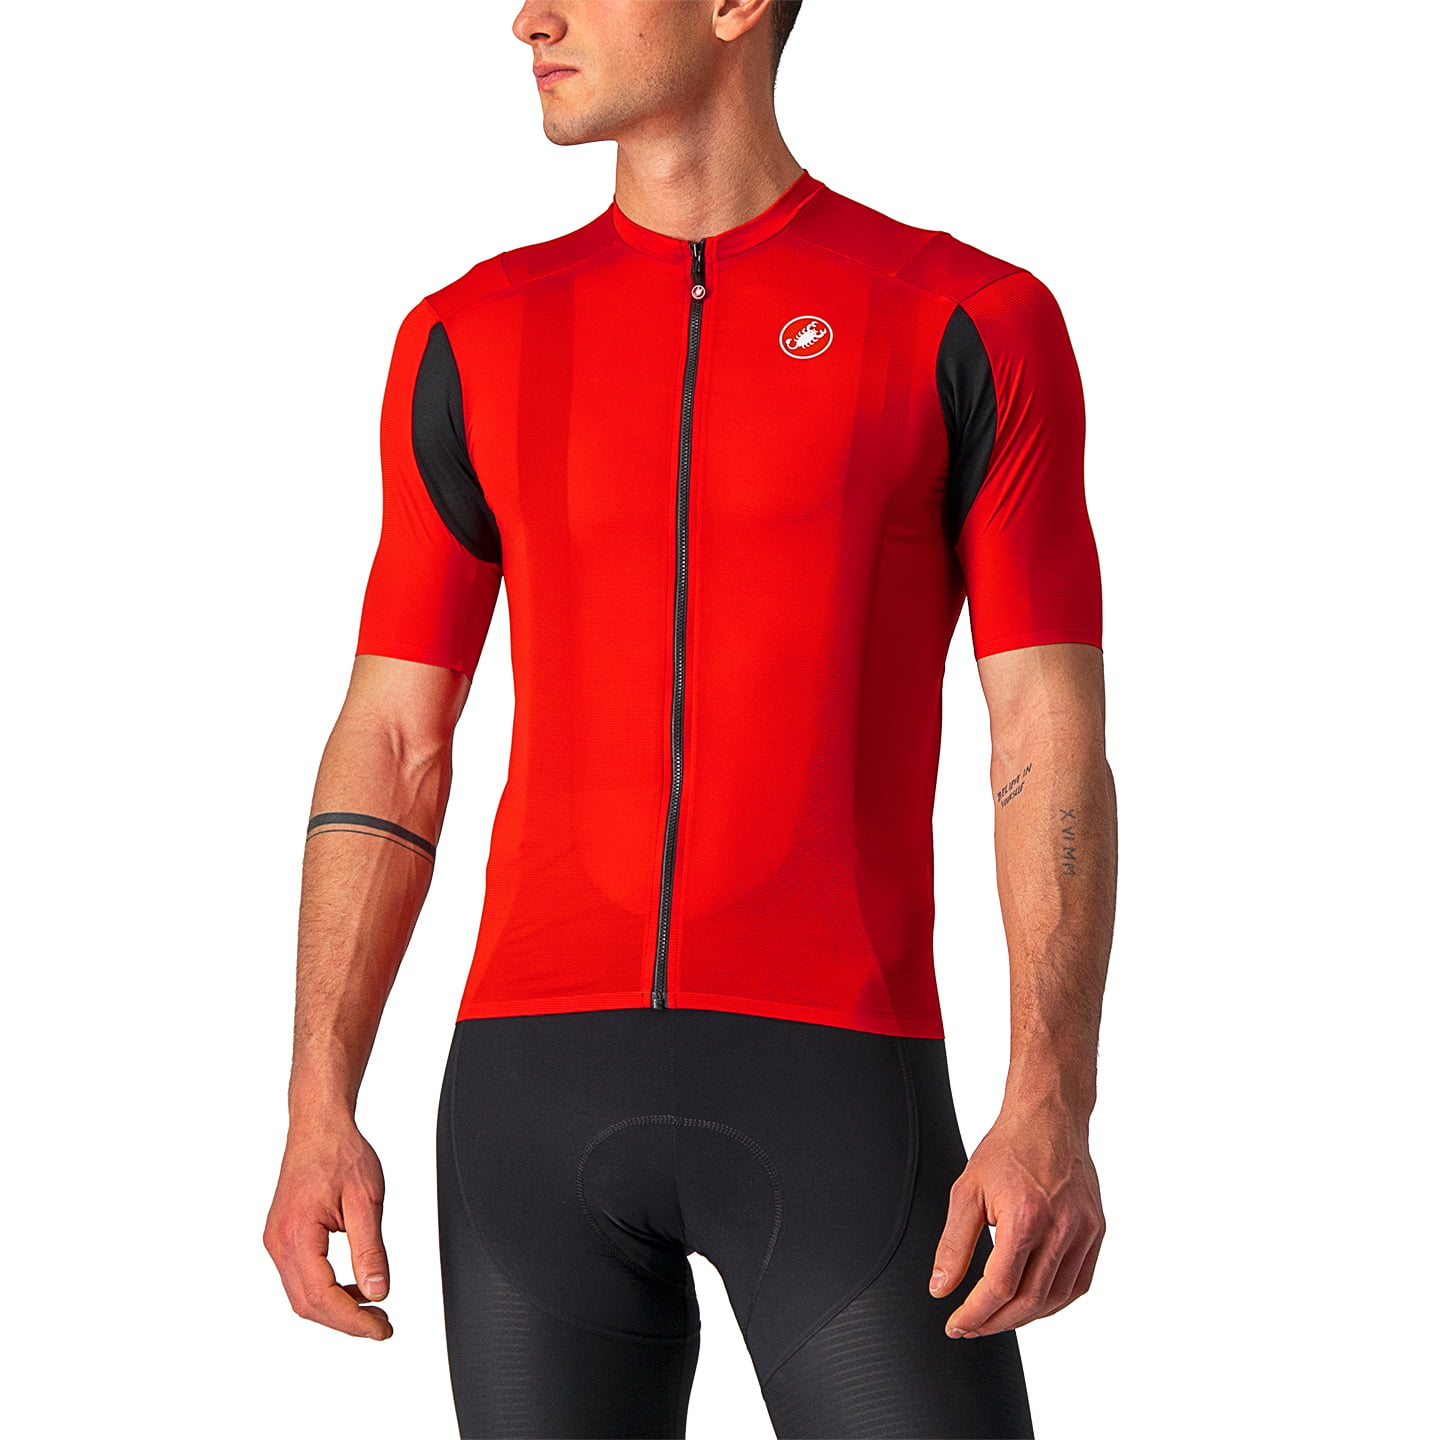 CASTELLI Superleggera 2 Short Sleeve Jersey Short Sleeve Jersey, for men, size 2XL, Cycling jersey, Cycle clothing